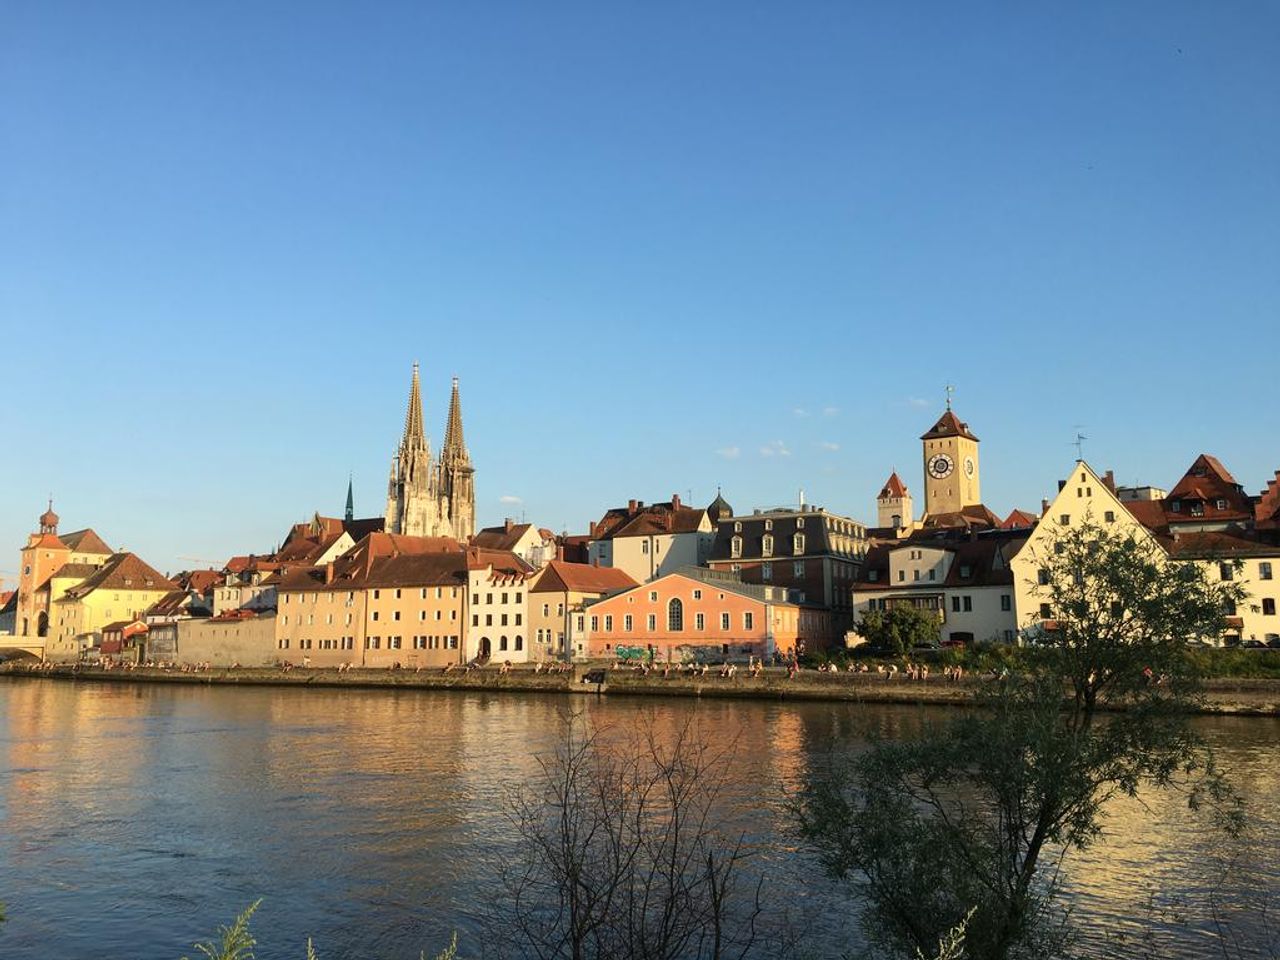 Radeln im wunderschönen Regensburg - 2 Tage